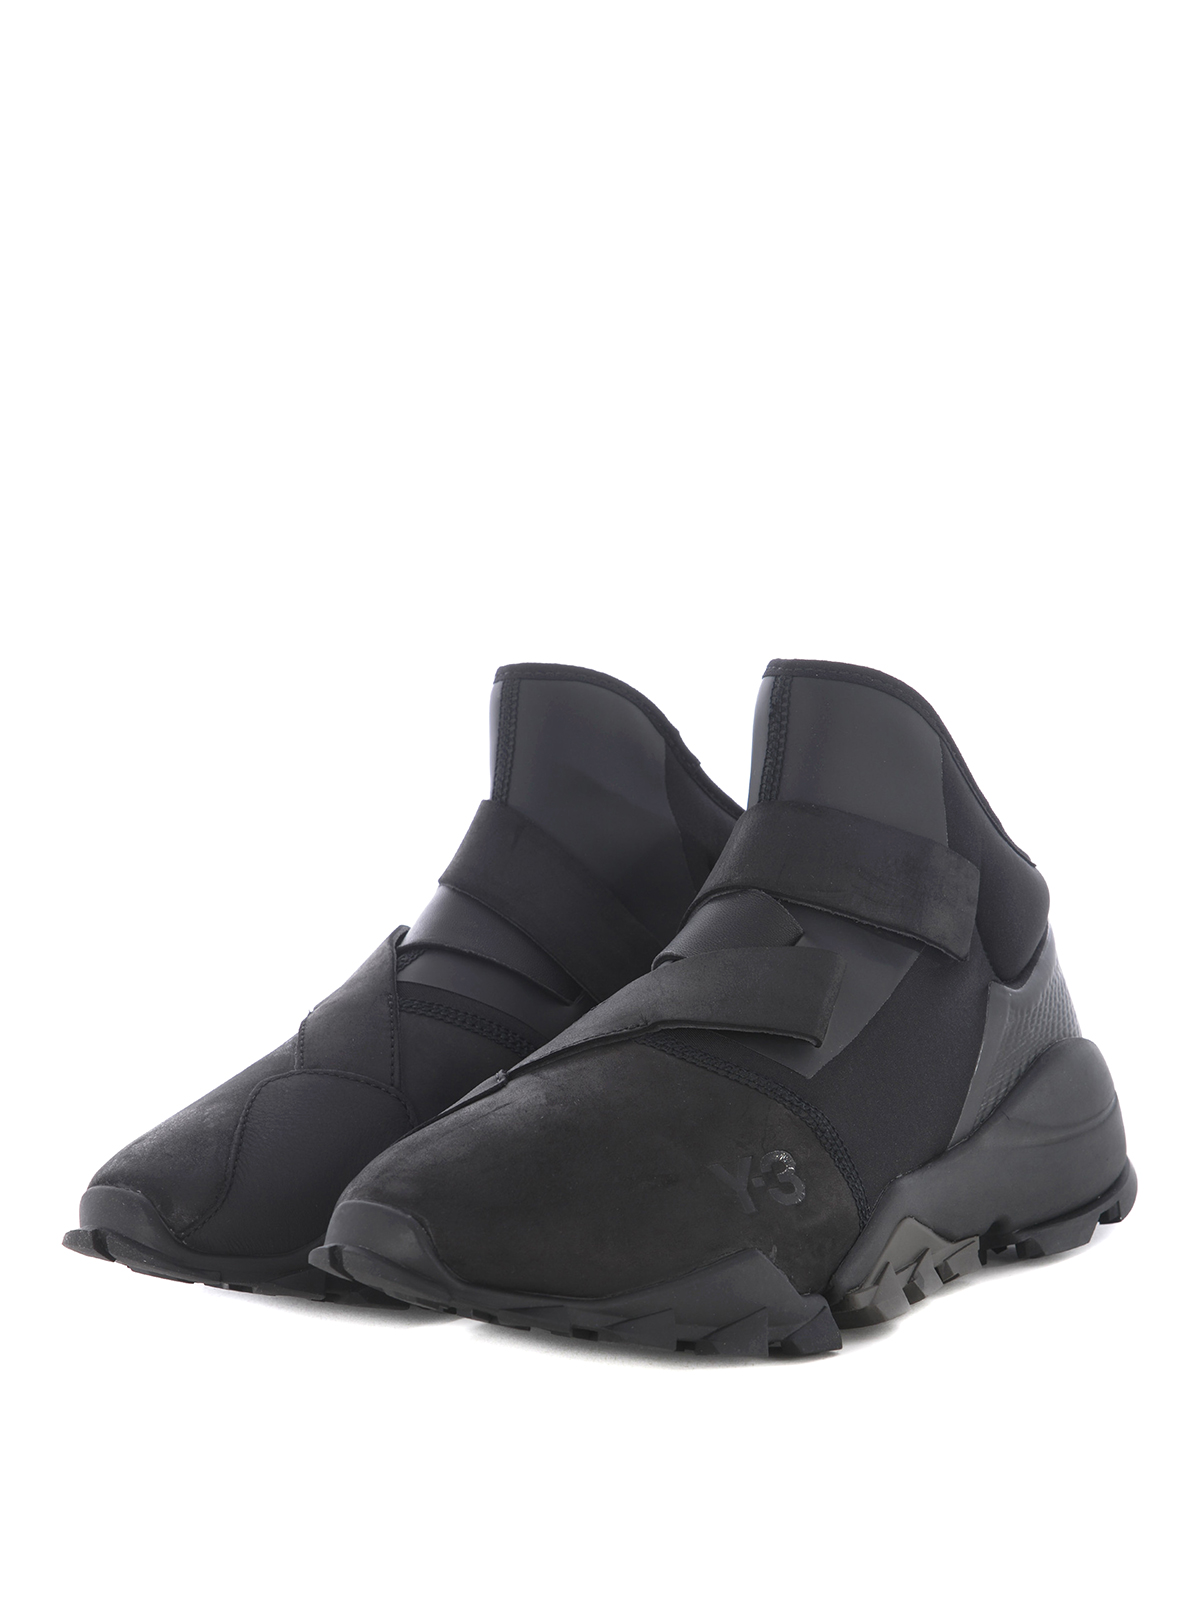 Trainers Adidas Y-3 Ryo black slip-on sneakers - CG3156